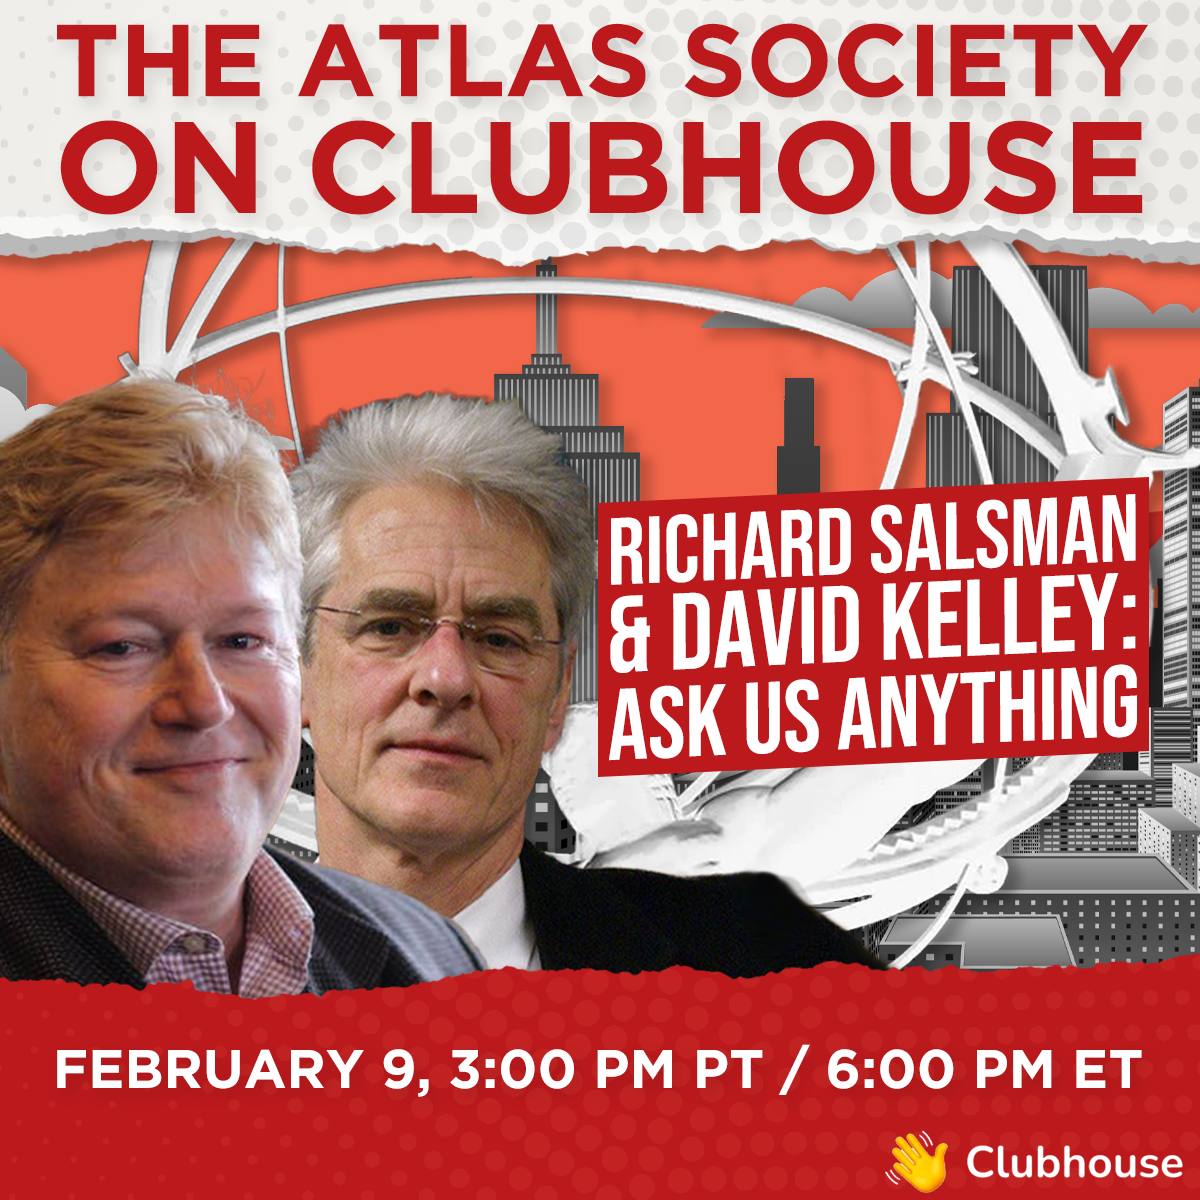 David Kelley & Richard Salsman - Ask Us Anything